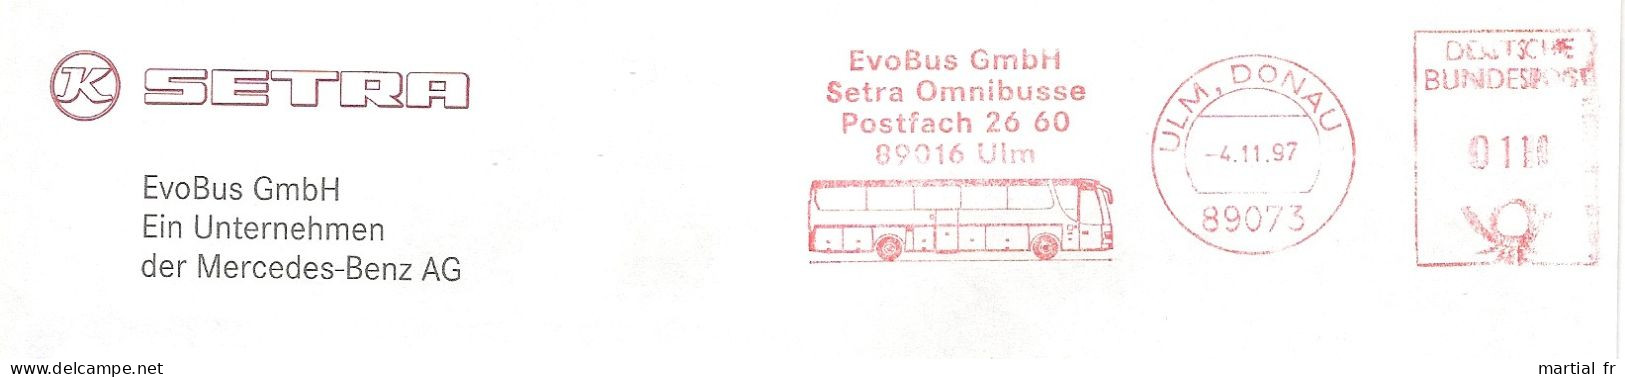 EMA RED METER STAMP FREISTEMPEL ALLEMAGNE BUS TRANSPORT AUTOBUS OMNIBUS EVOBUS ULM DAIMLER BENZ Donau 89073 - Busses